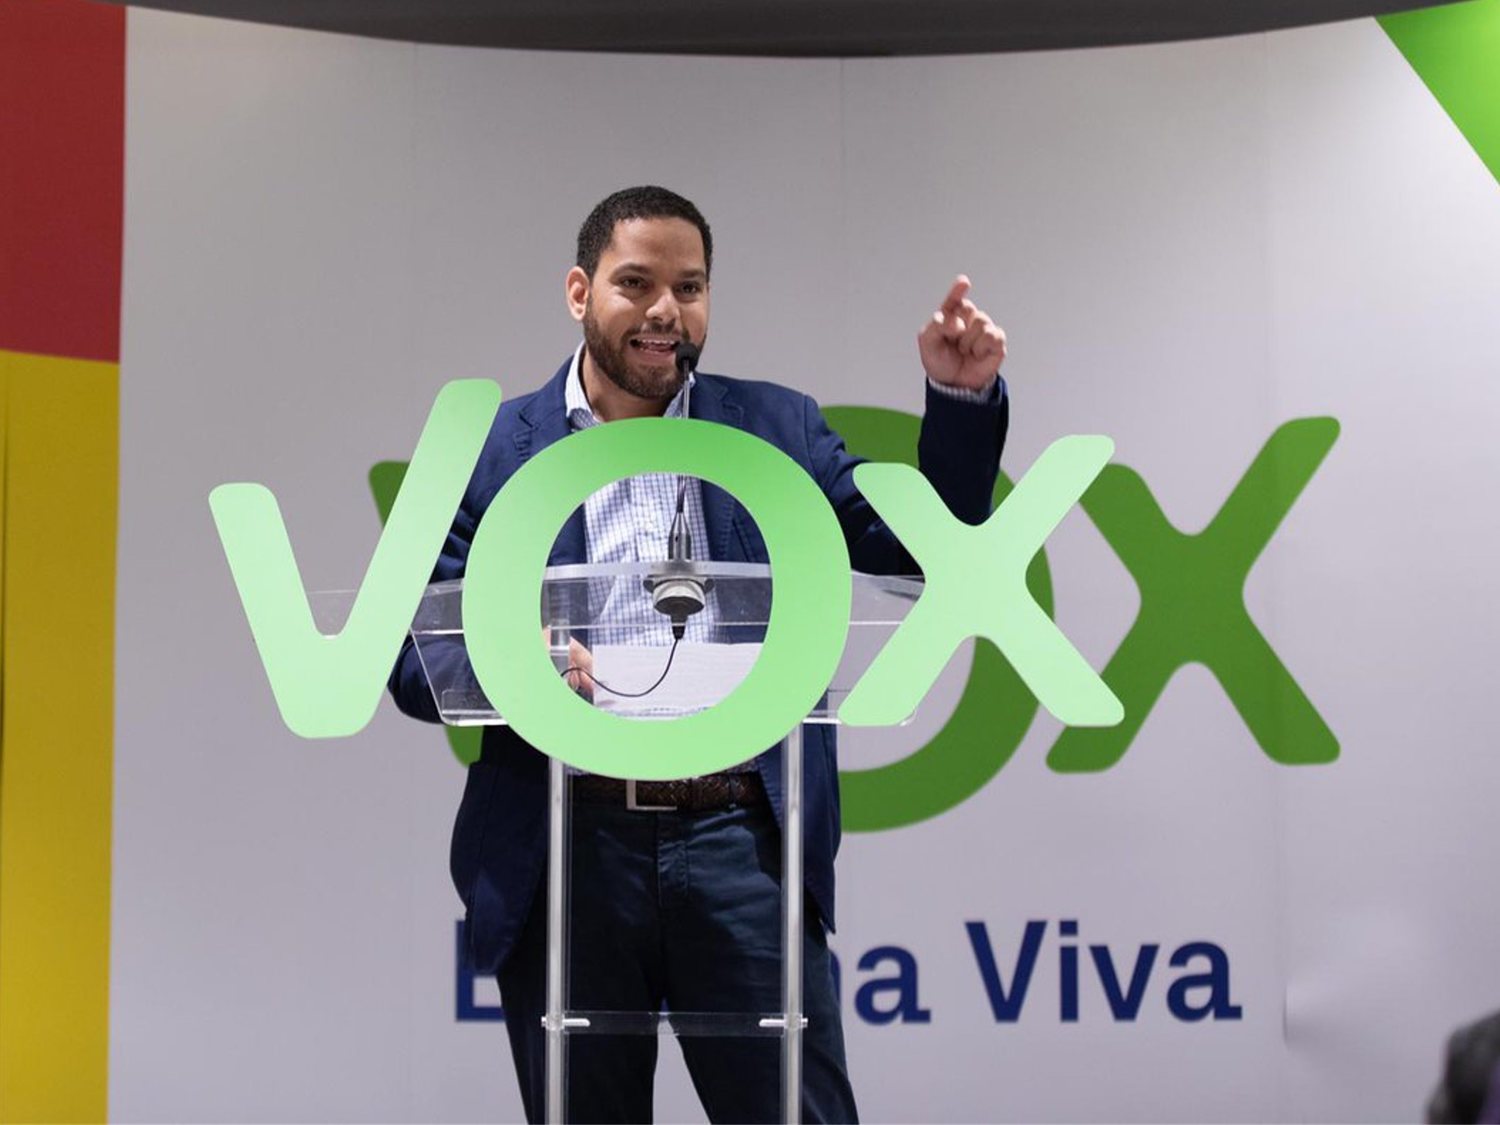 El líder de VOX Cataluña: "La sanidad universal y gratuita es una lacra"